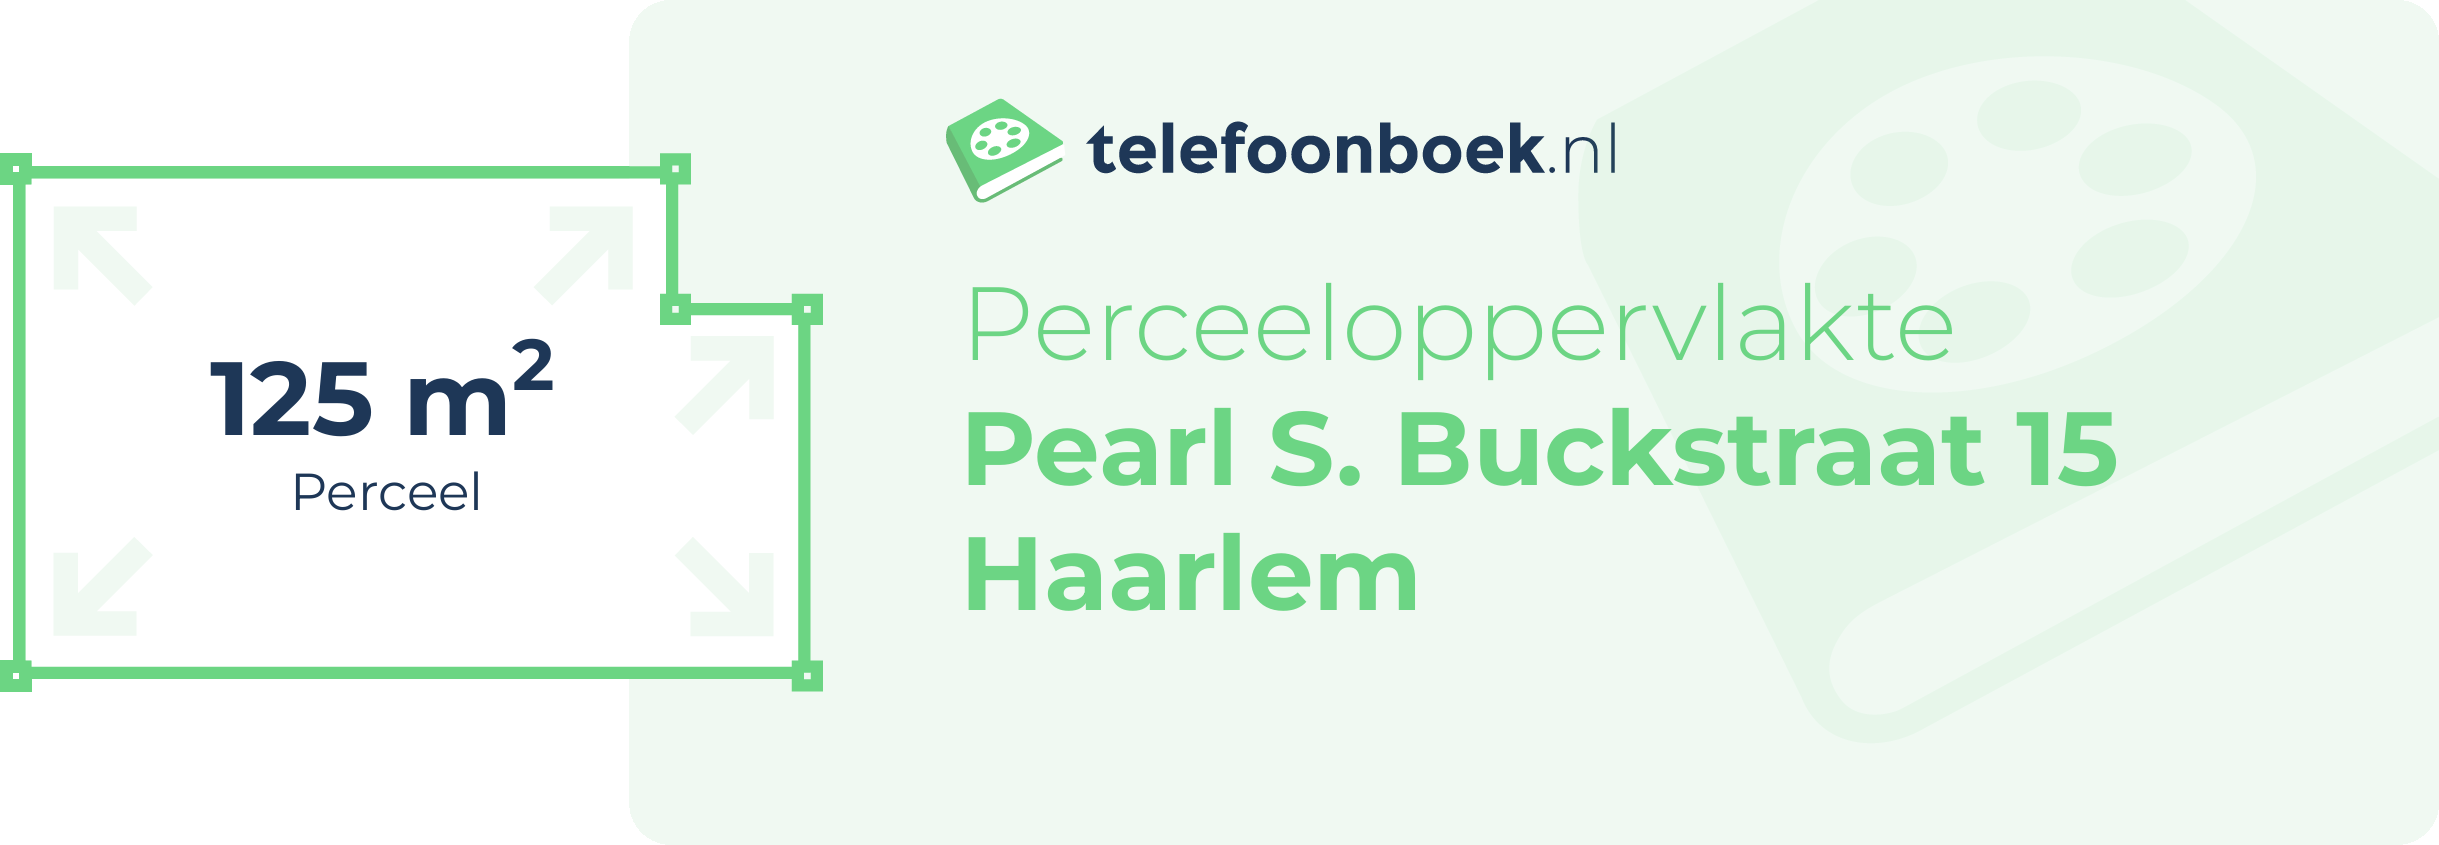 Perceeloppervlakte Pearl S. Buckstraat 15 Haarlem